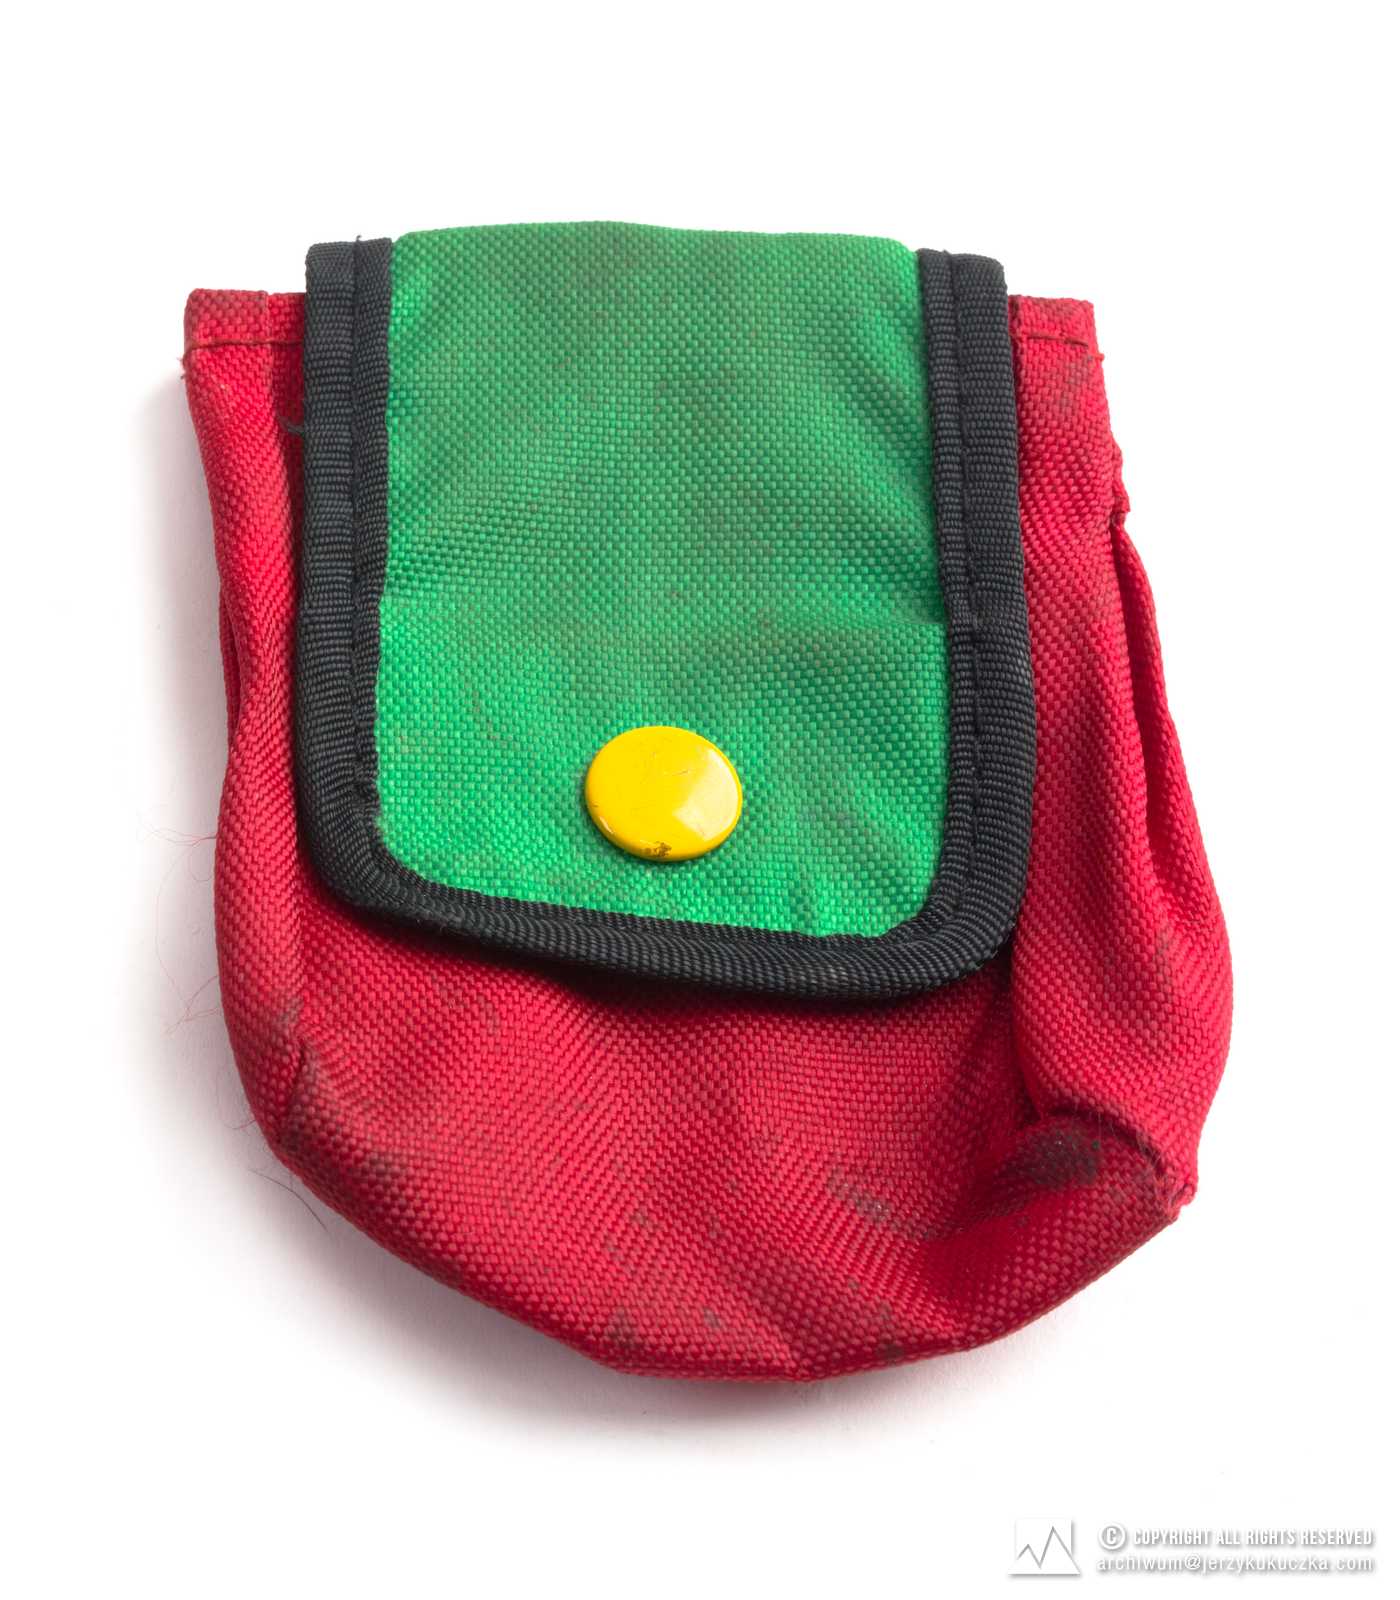 saszetka koloru czerwonego, klapa zielona, guzik żółty, zapinana na guzik, do przewlekania przez pas, długość- 10 cm, szerokość- 8.5 cm. Lata 60-80 XX w.